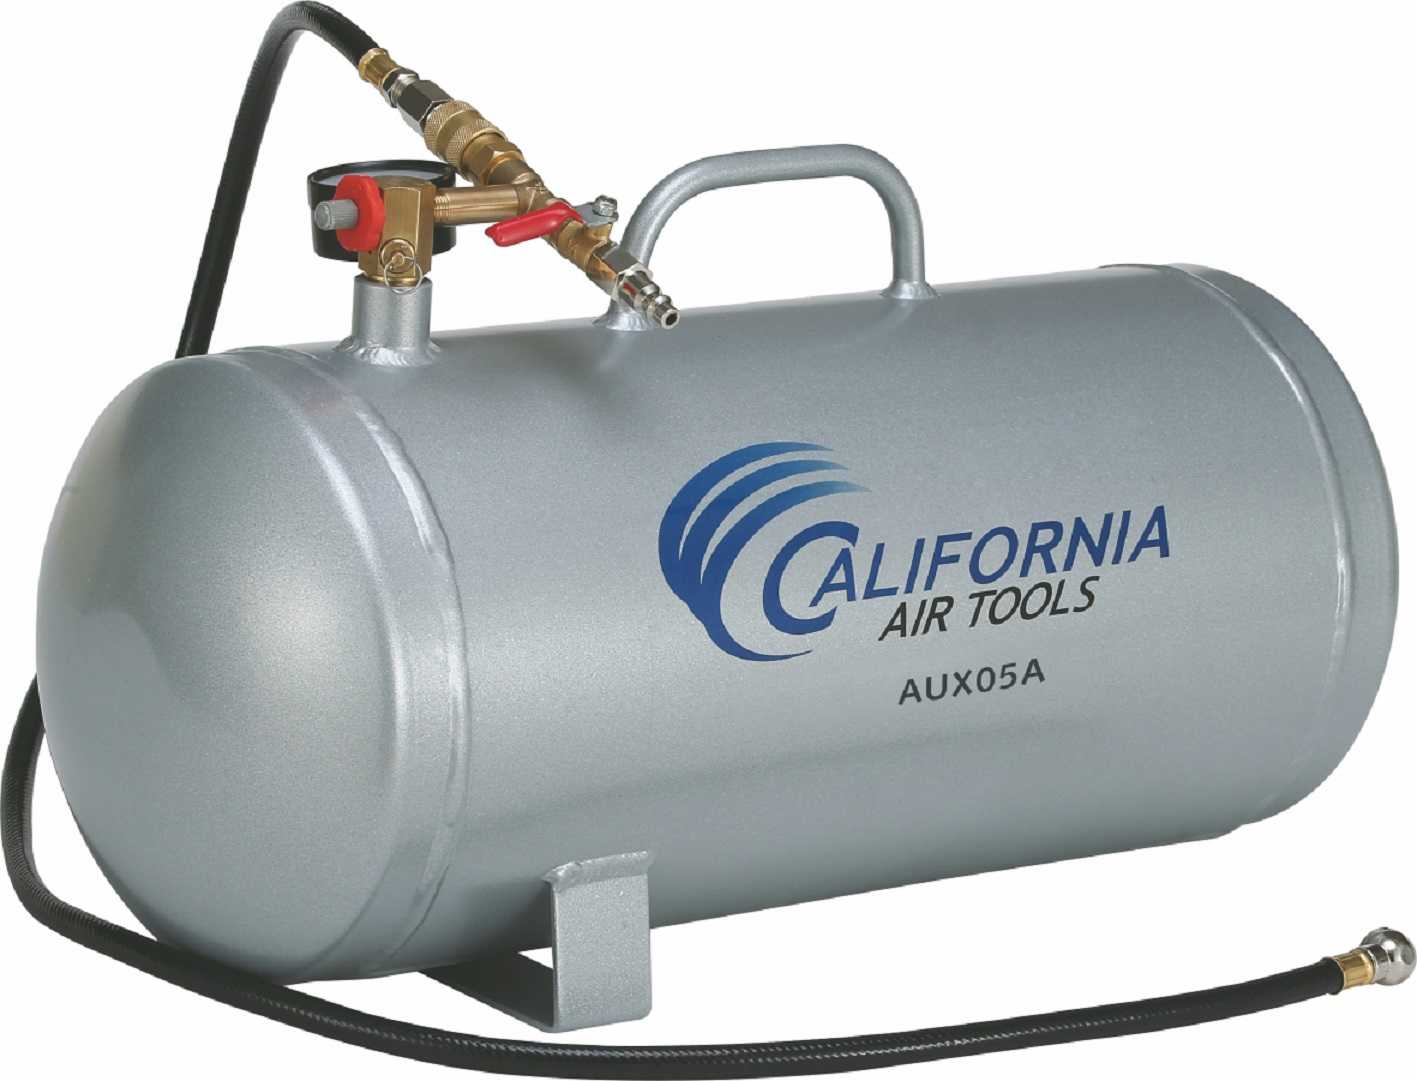 California Air Tools AUX05A - 5 Gallon Lightweight Portable Aluminum Air Tank